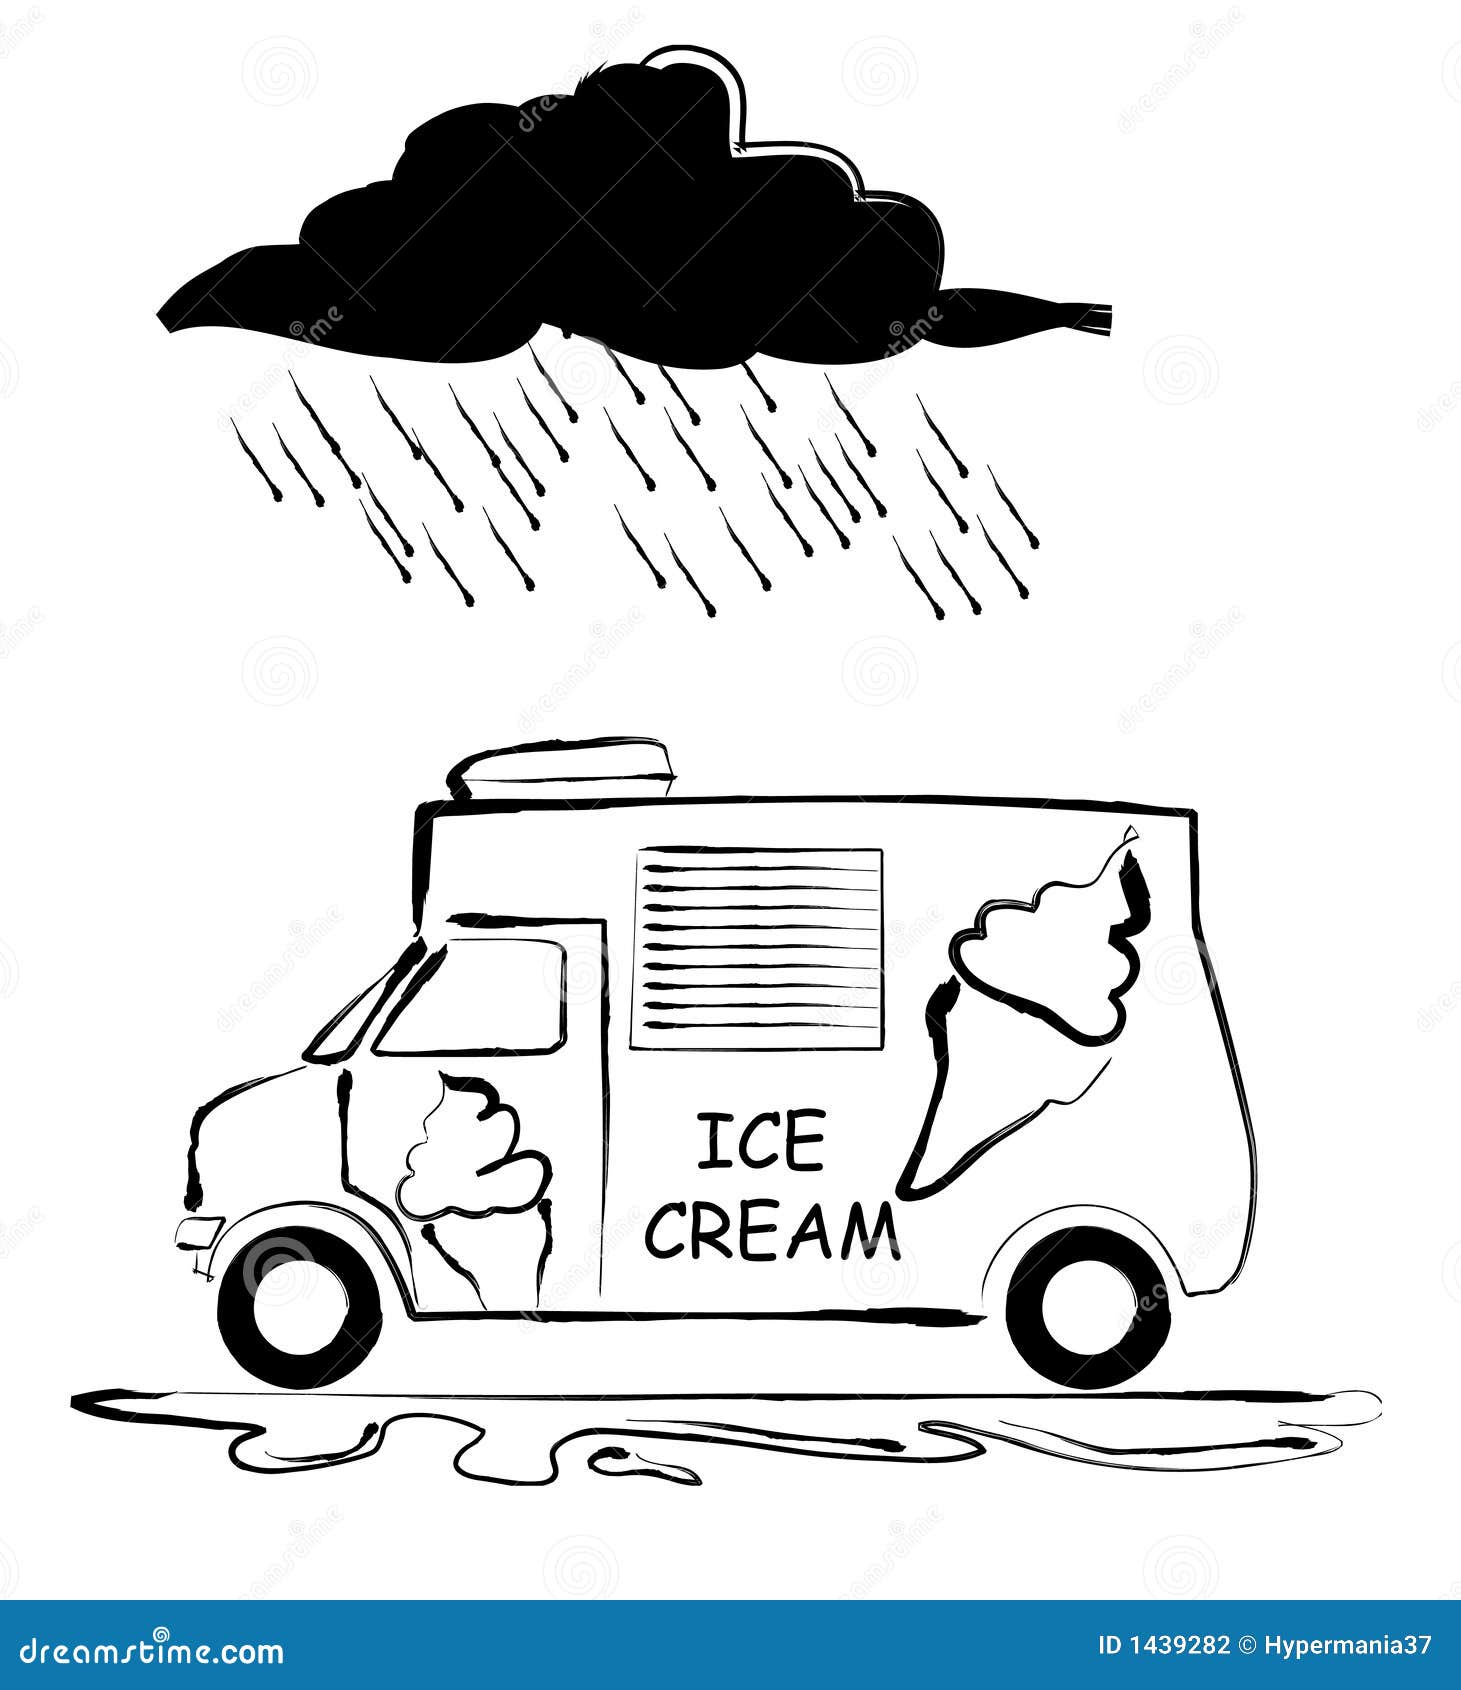 Icecream van stock illustration. Illustration of sell - 1439282